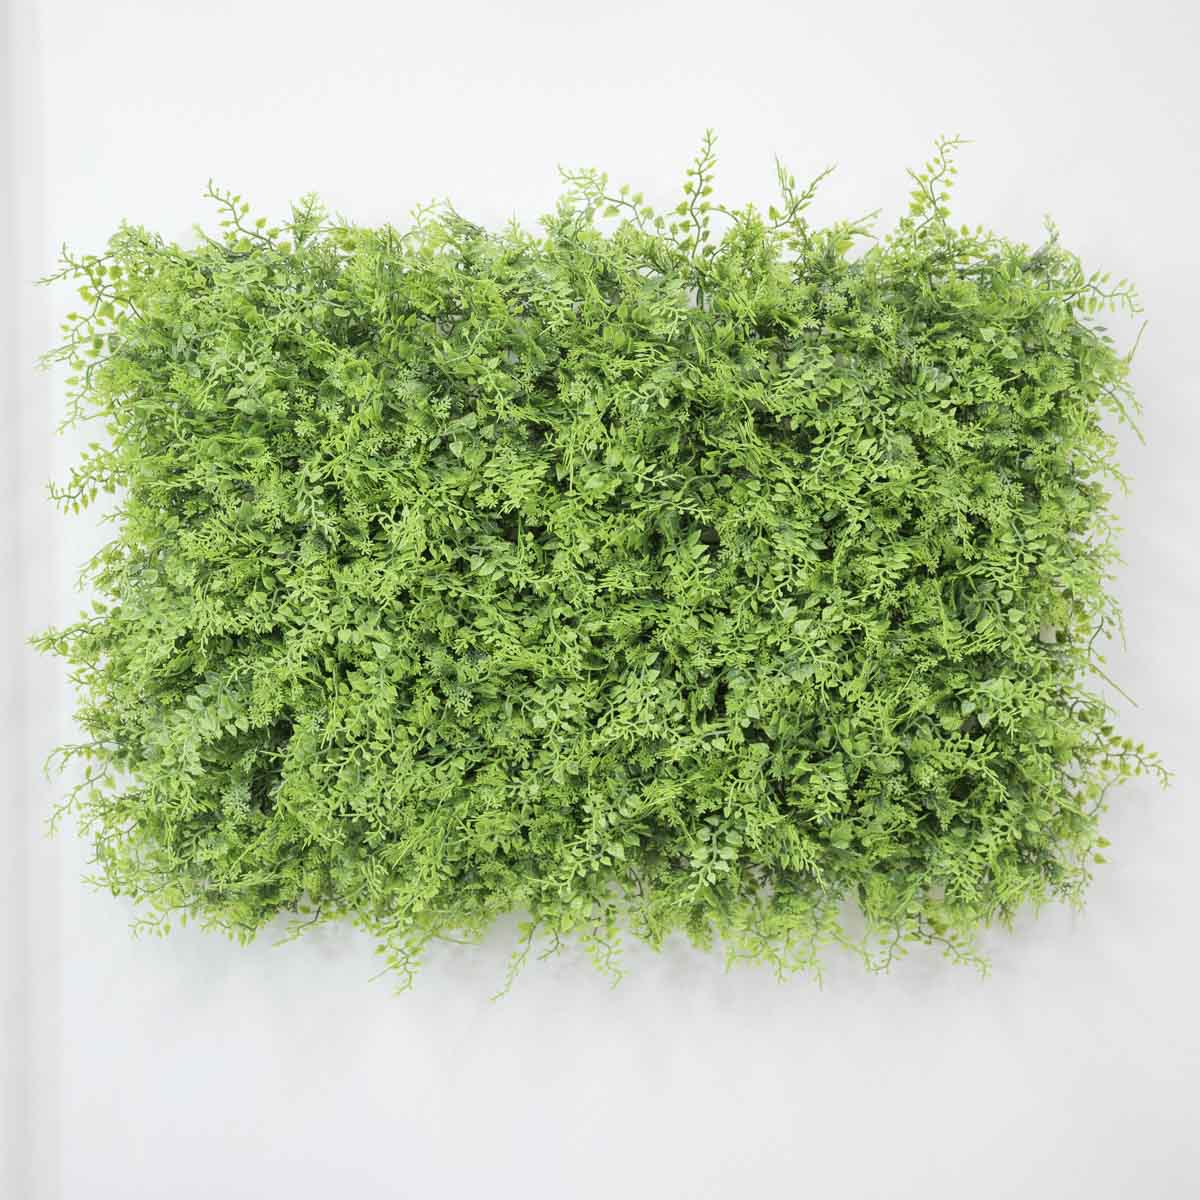 인조 식물매트 그린 잎사귀 믹스 60X40, 실내정원 식물벽 벽면녹화 상품 다중이미지 썸네일